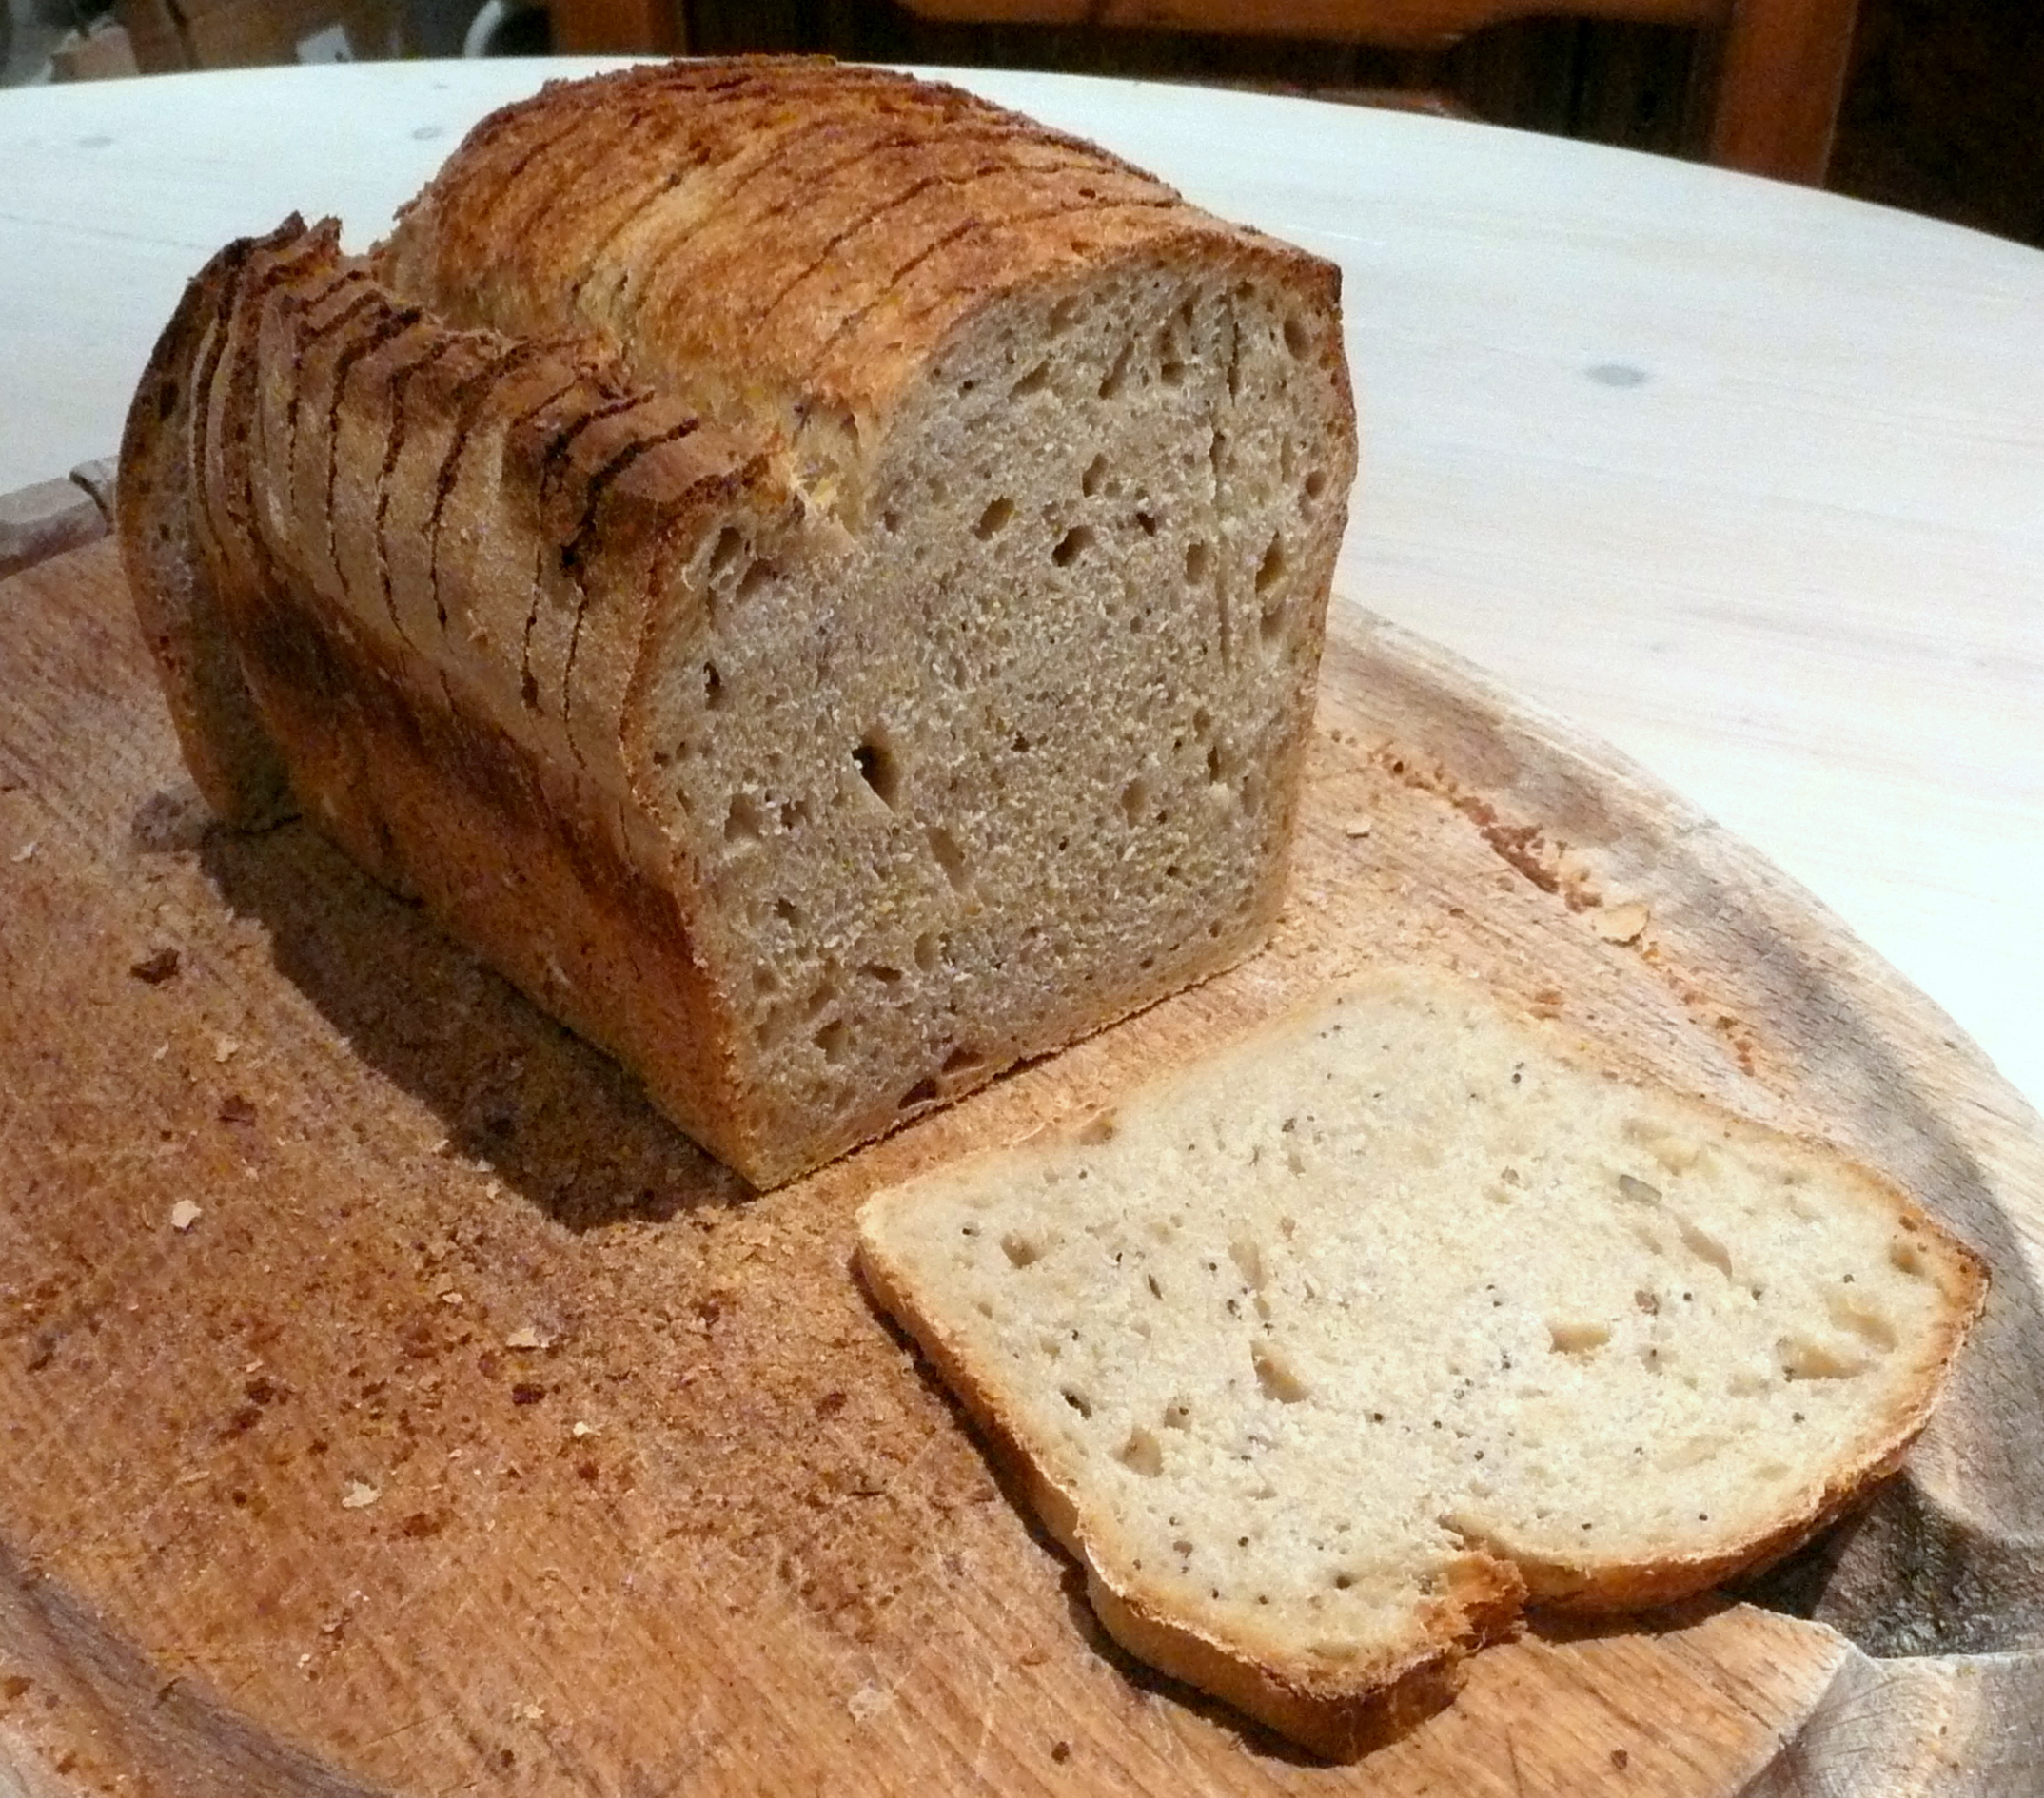 Moule à pain de Mie toast (Baker's)